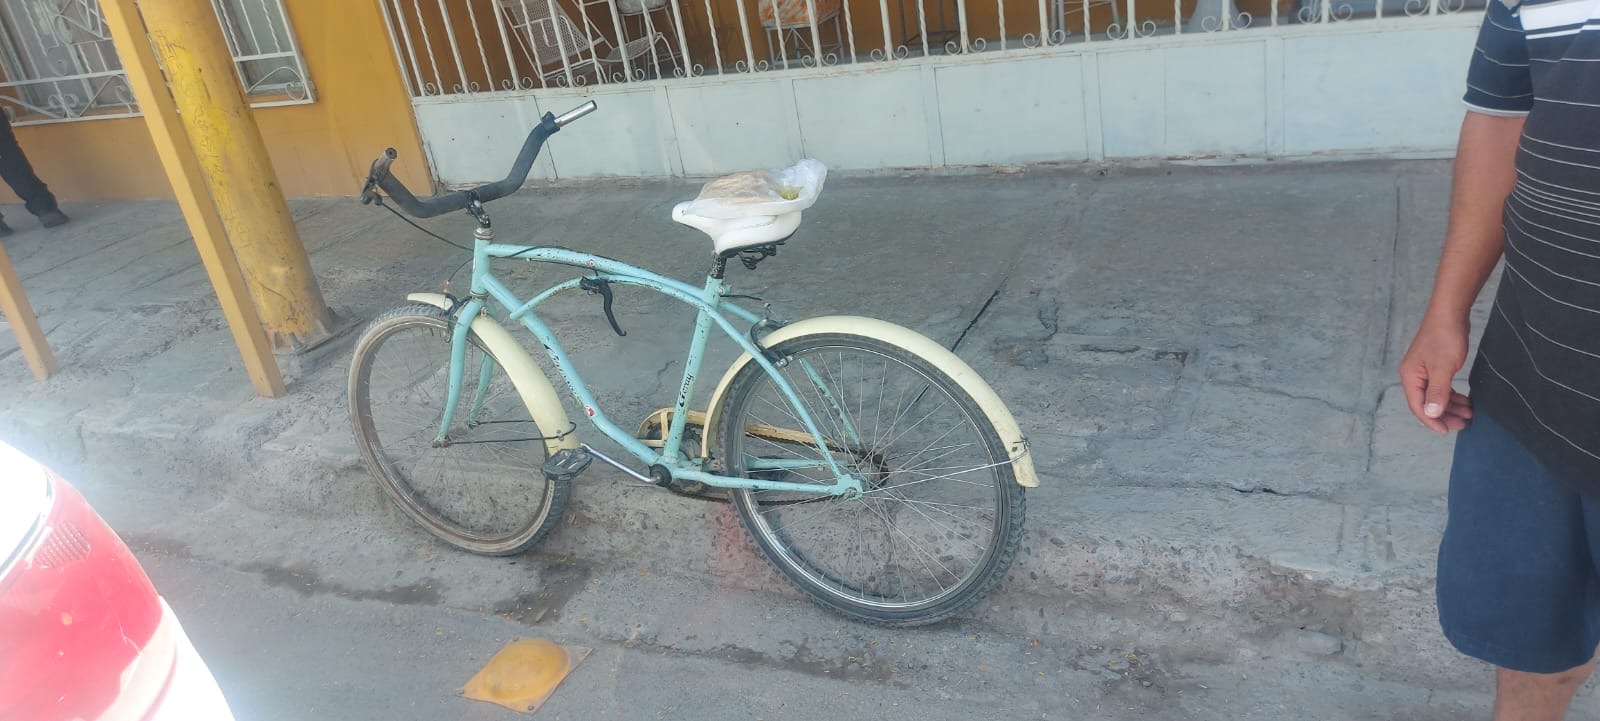 Bicicleta tipo balona, color verde con amarillo. (EL SIGLO DE TORREÓN)